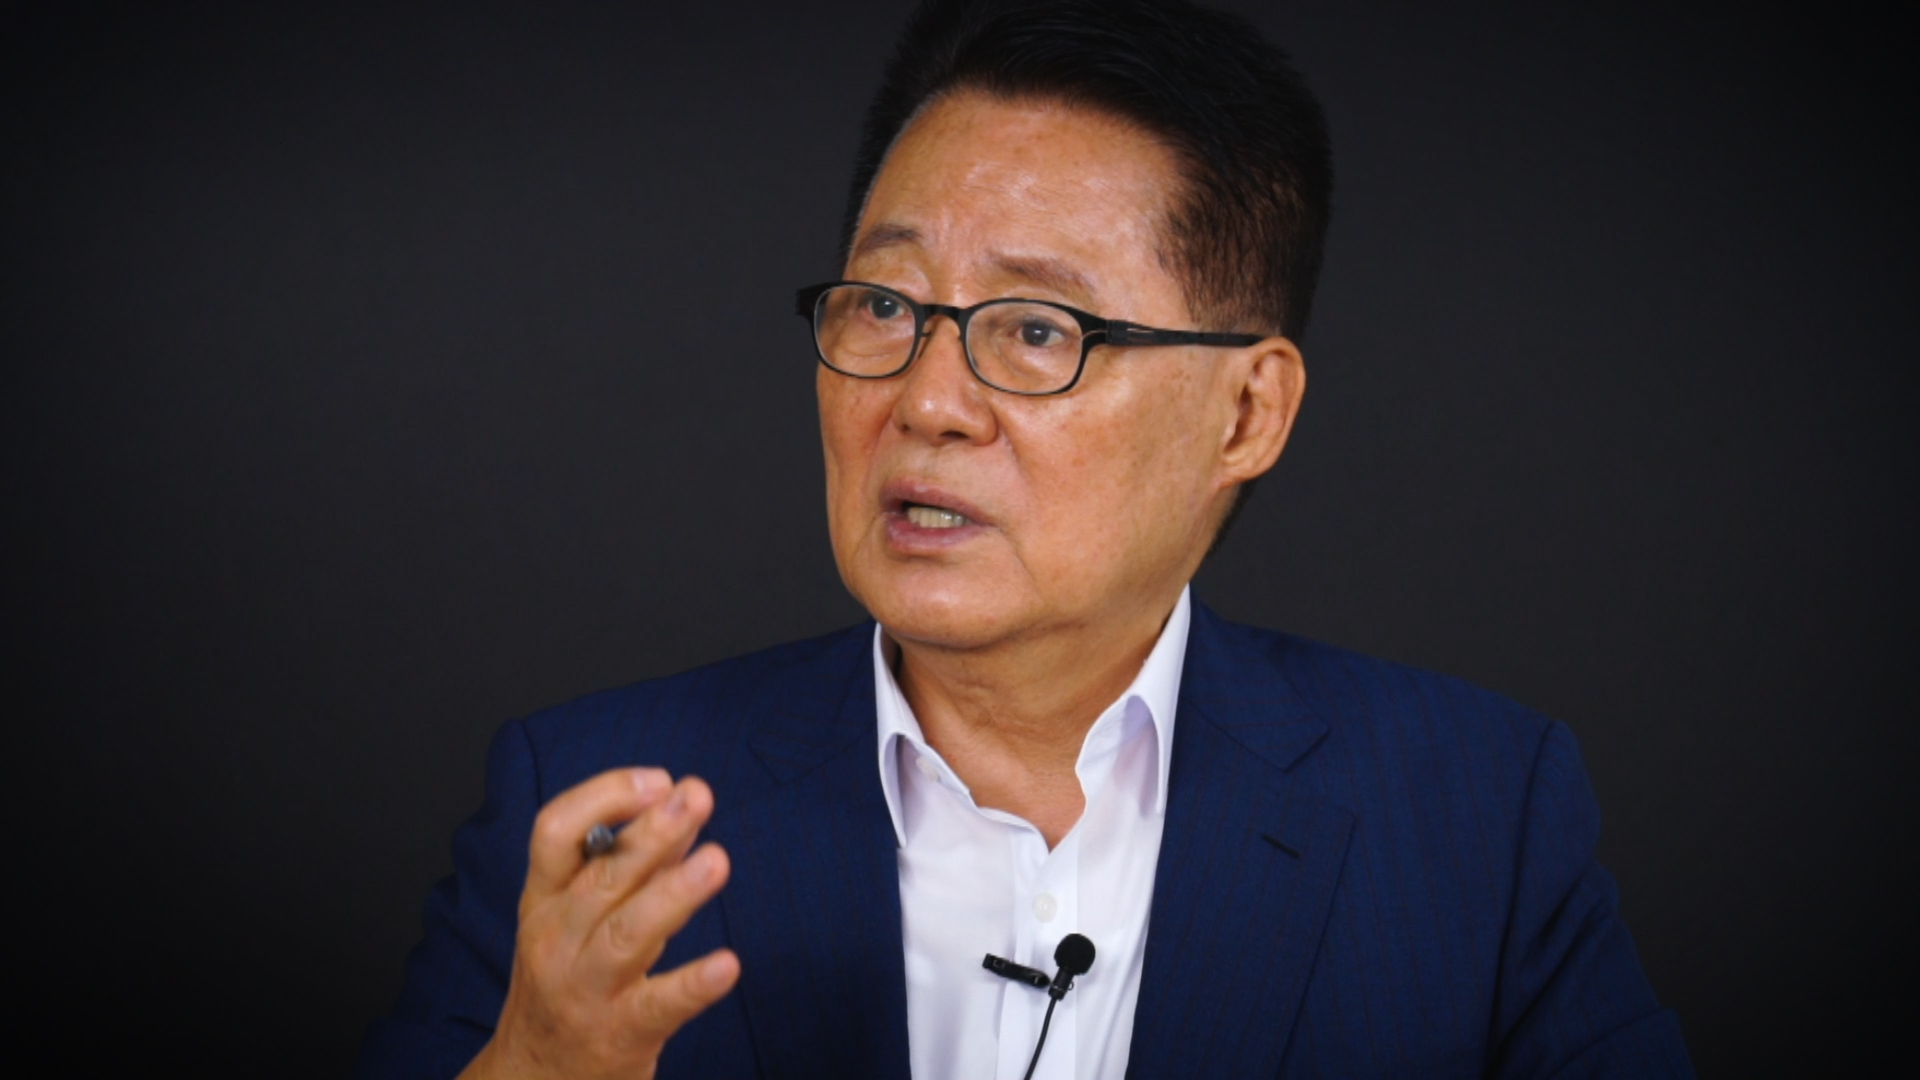 ‘박지원의 점치는 정치’(박점치)에 출연한 박지원 ‘변화와 희망의 대안정치연대’ 의원